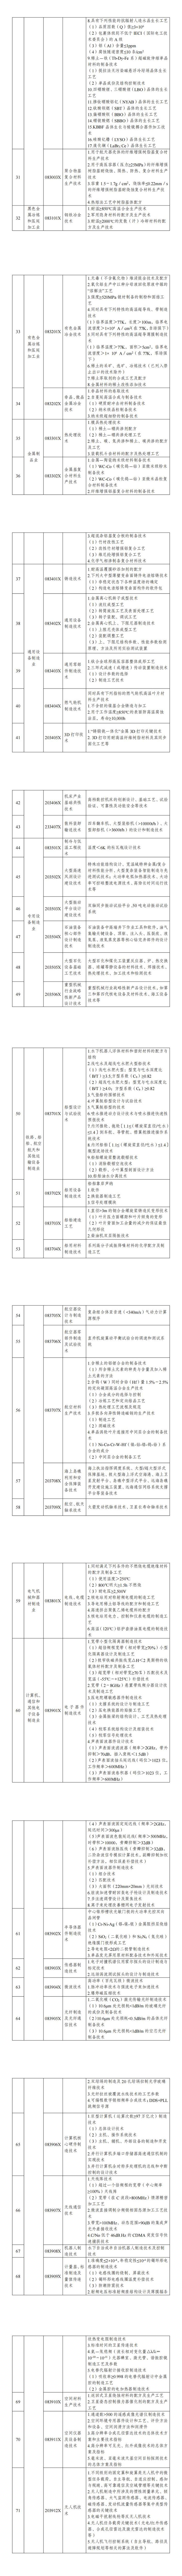 《中国禁止出口限制出口技术目录》_00(1).jpg